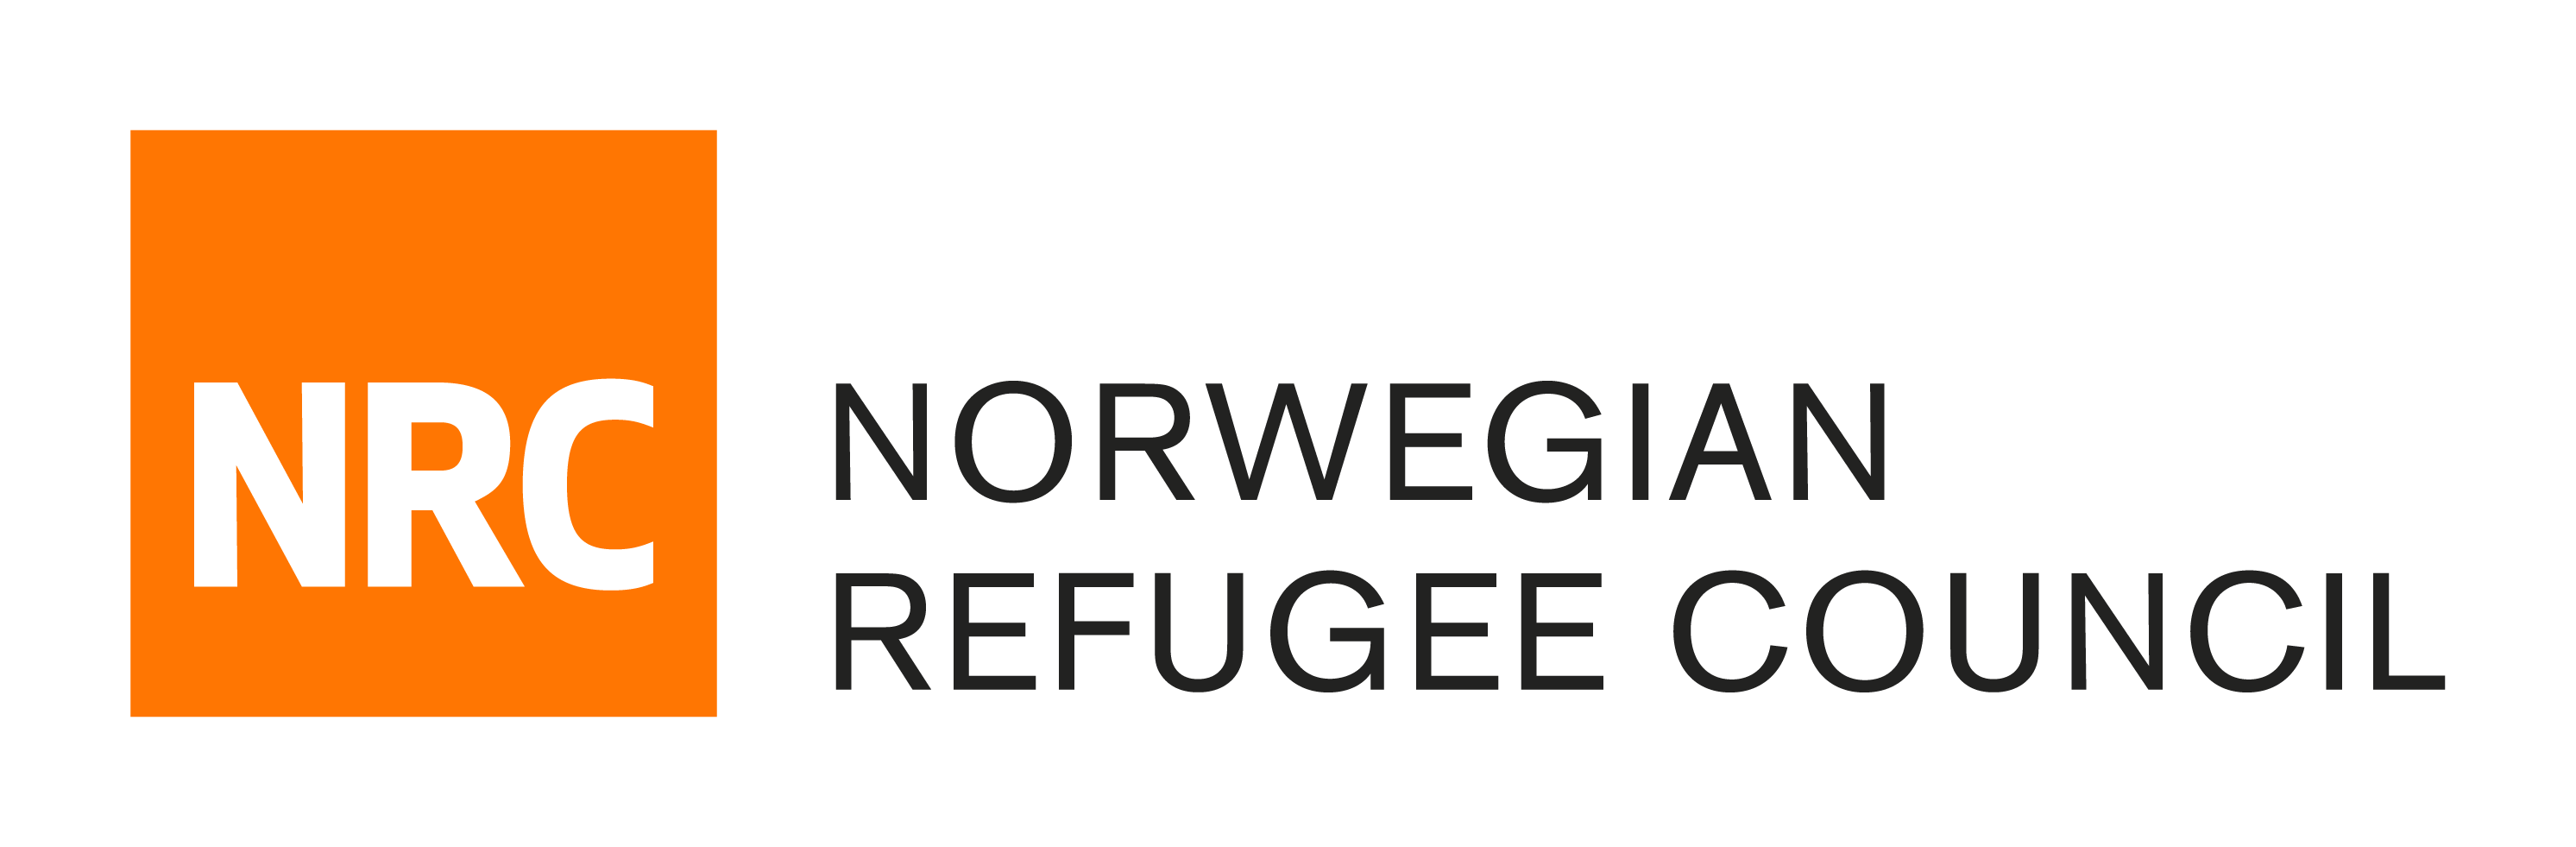 NRC's logo